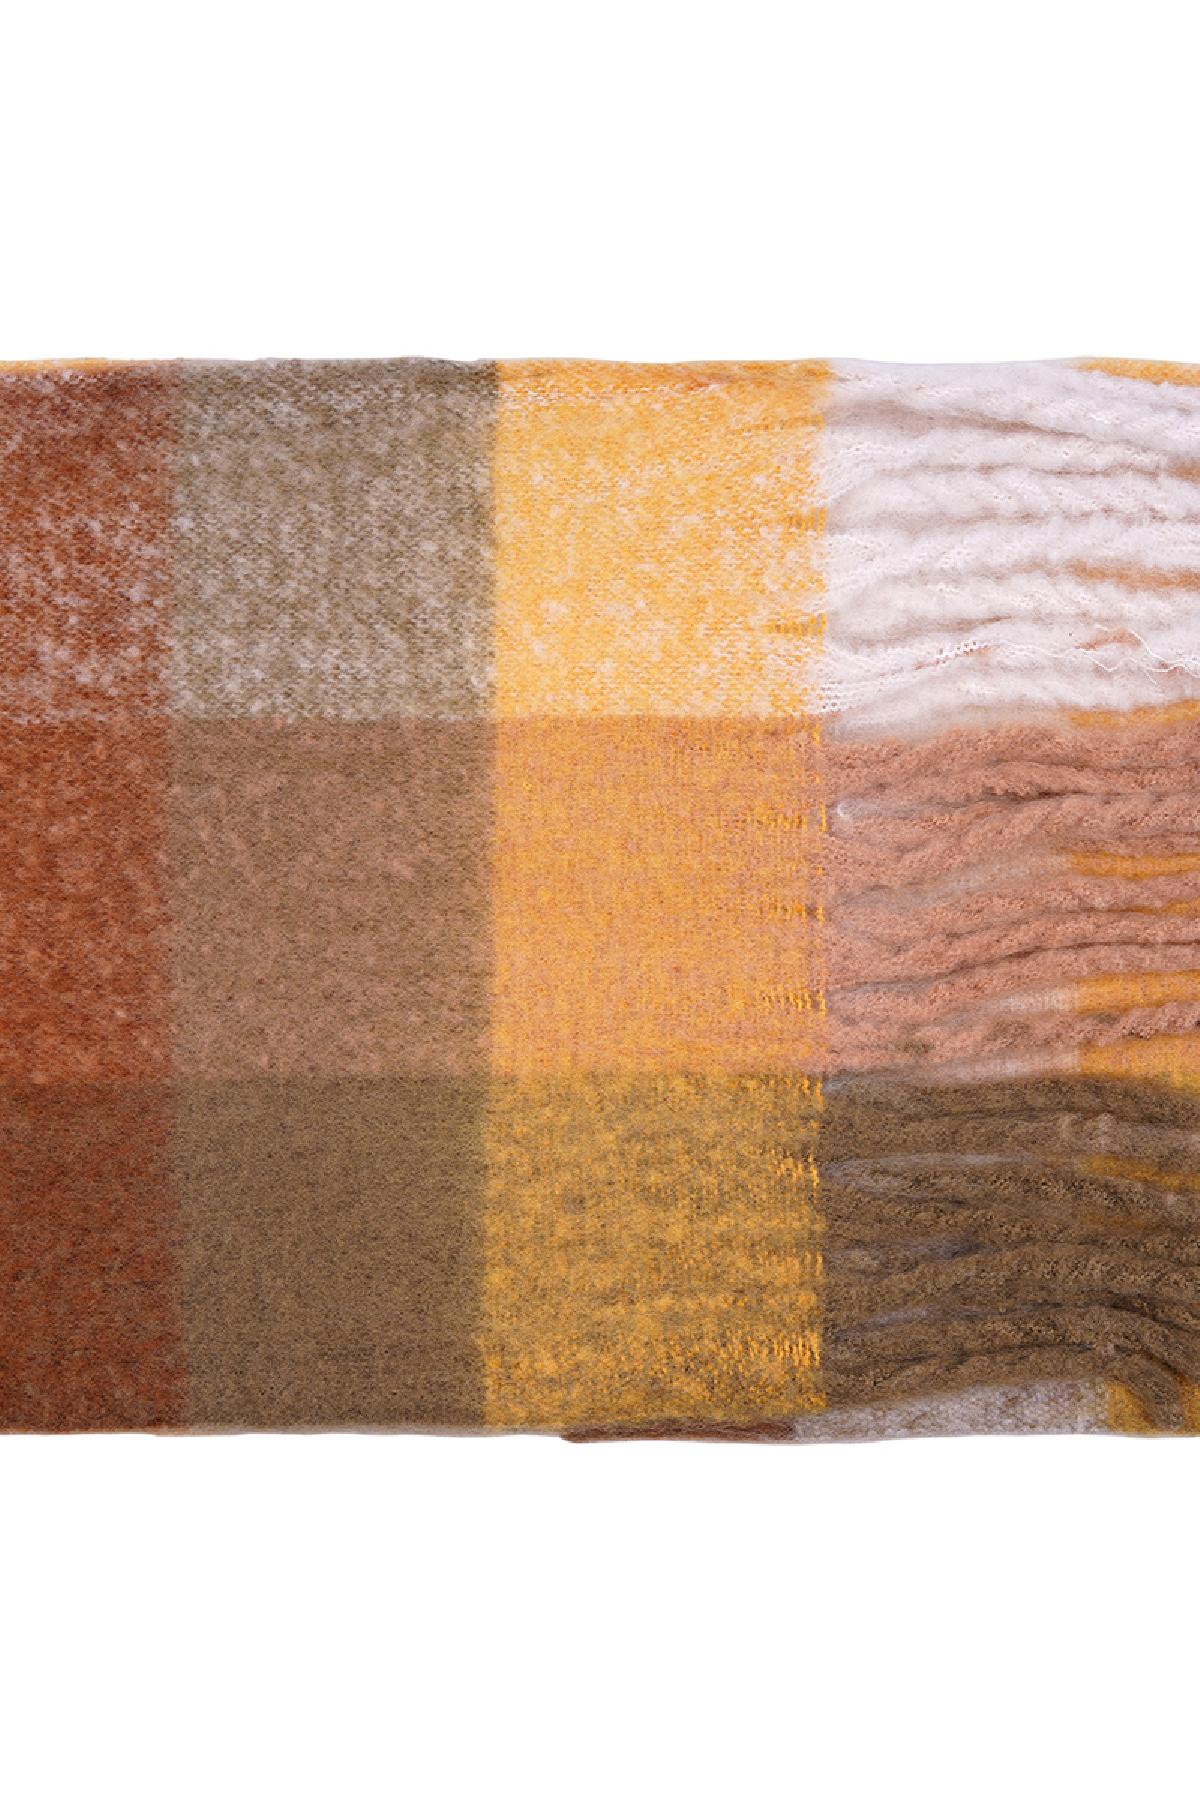 Wintersjaal geruite kleuren Beige & Geel Polyester h5 Afbeelding2